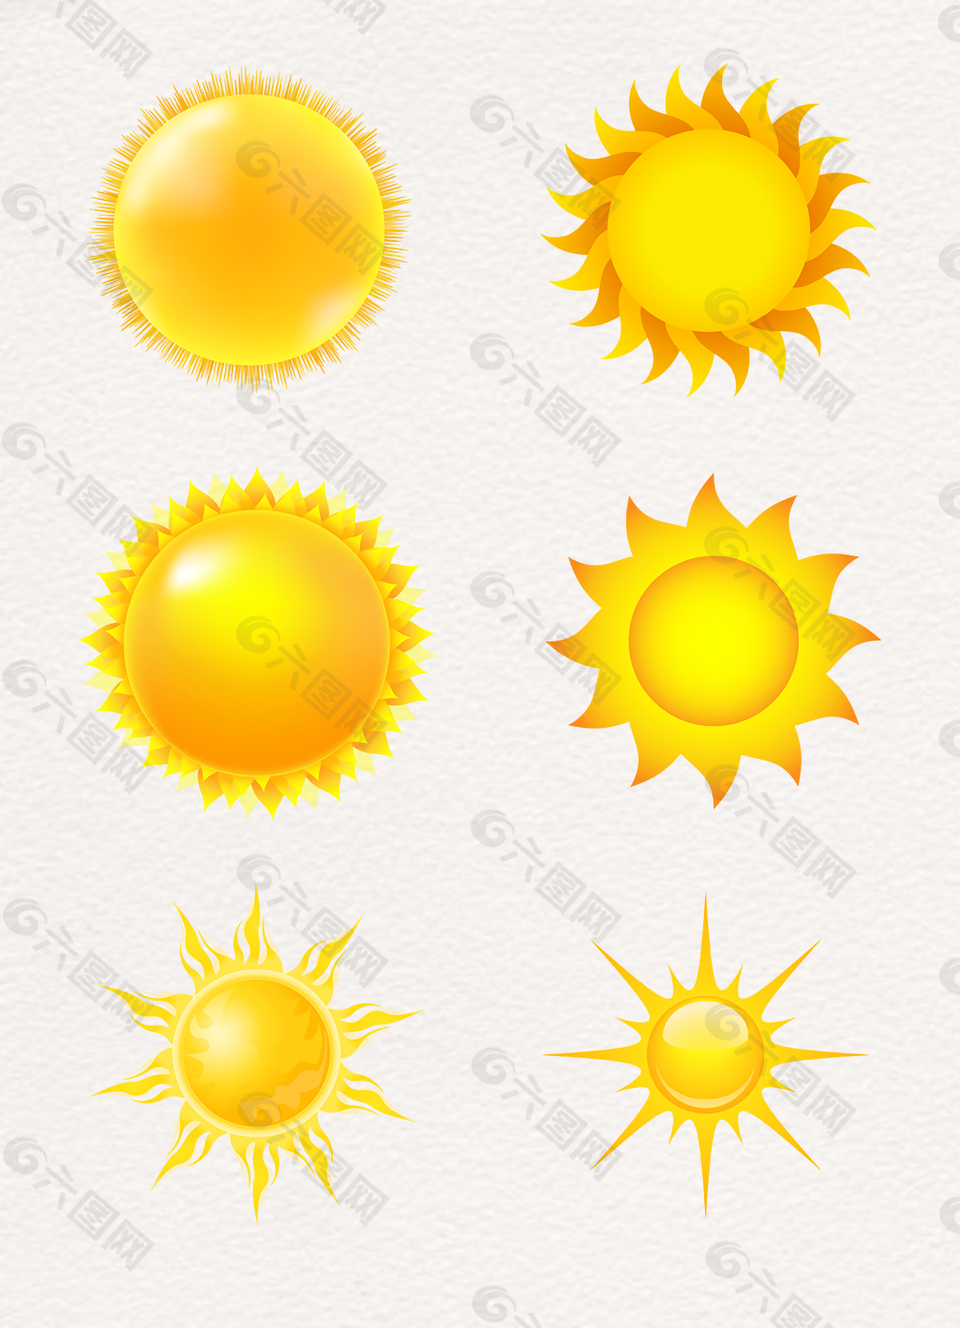 黄色放射太阳形状卡通素材